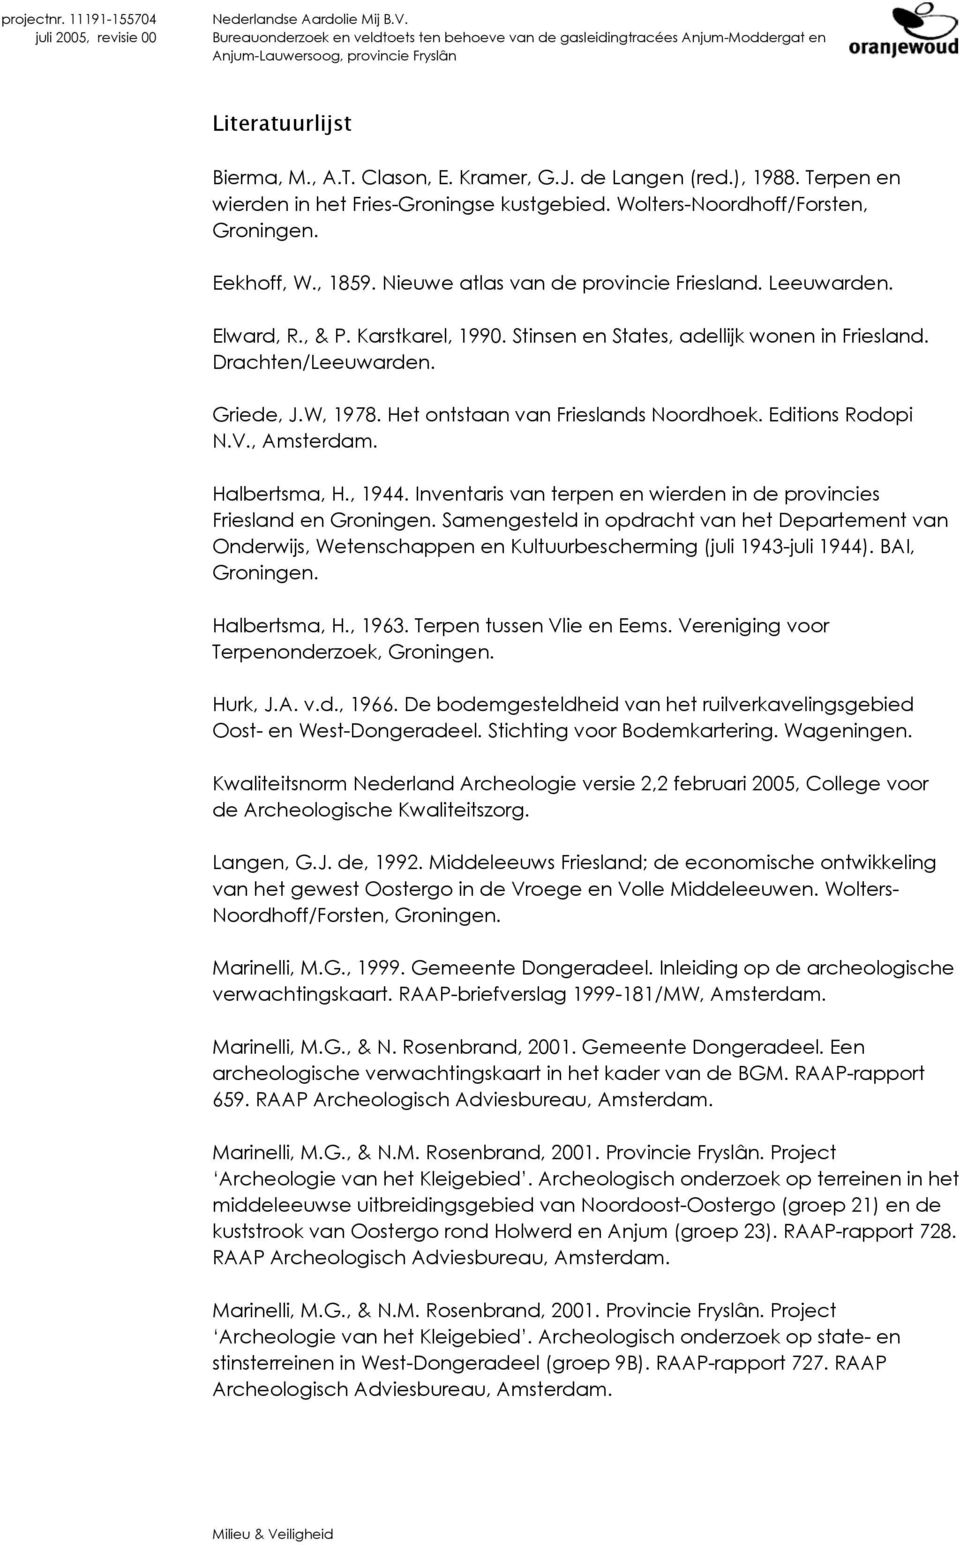 Het ontstaan van Frieslands Noordhoek. Editions Rodopi N.V., Amsterdam. Halbertsma, H., 1944. Inventaris van terpen en wierden in de provincies Friesland en Groningen.